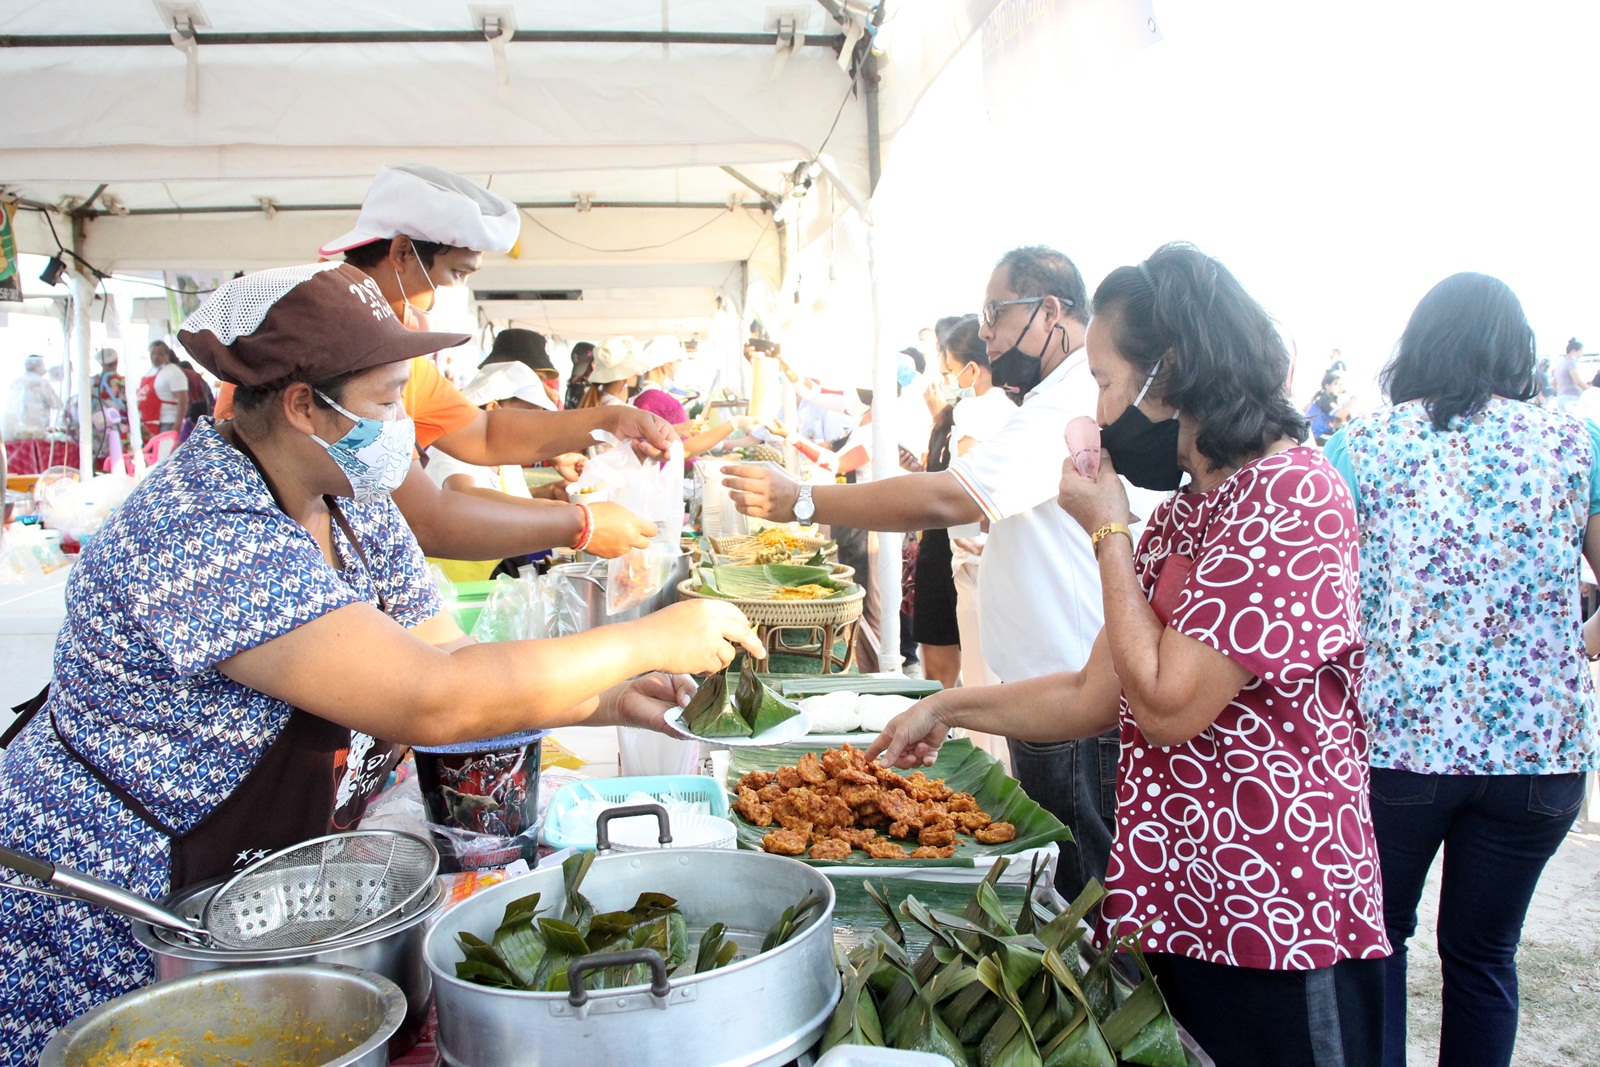 เริ่มแล้ว เทศกาลอาหารพื้นเมืองของดีชาวภูเก็ต “หรอย ริม เล” กระตุ้นเศรษฐกิจการท่องเที่ยว